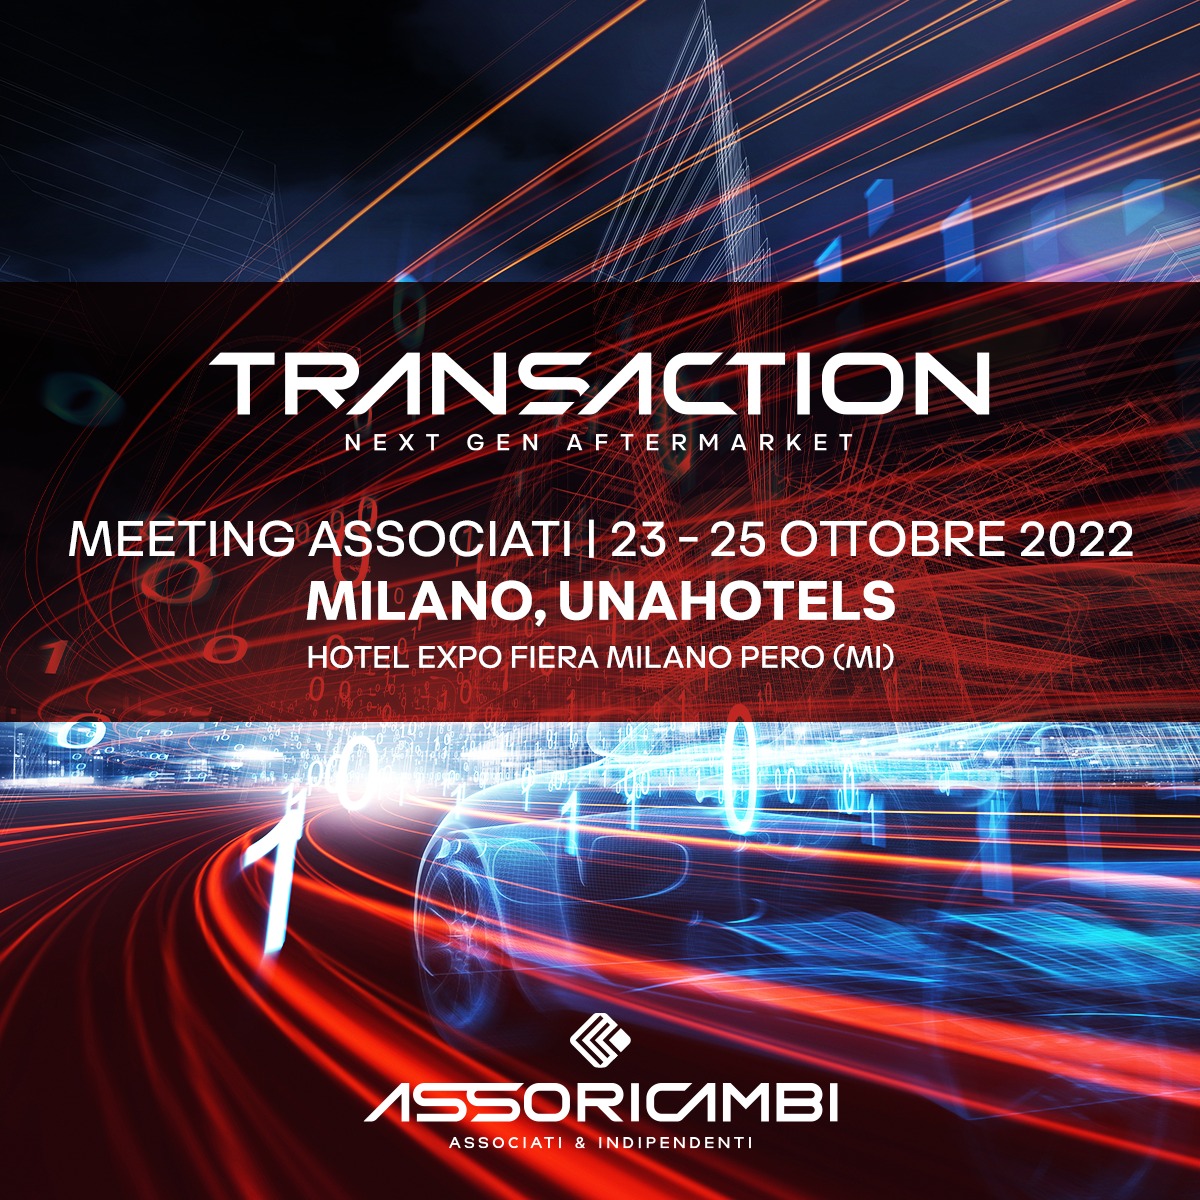 Meeting Associati 2022: Il Consorzio riparte da Milano. Con una marcia in più!